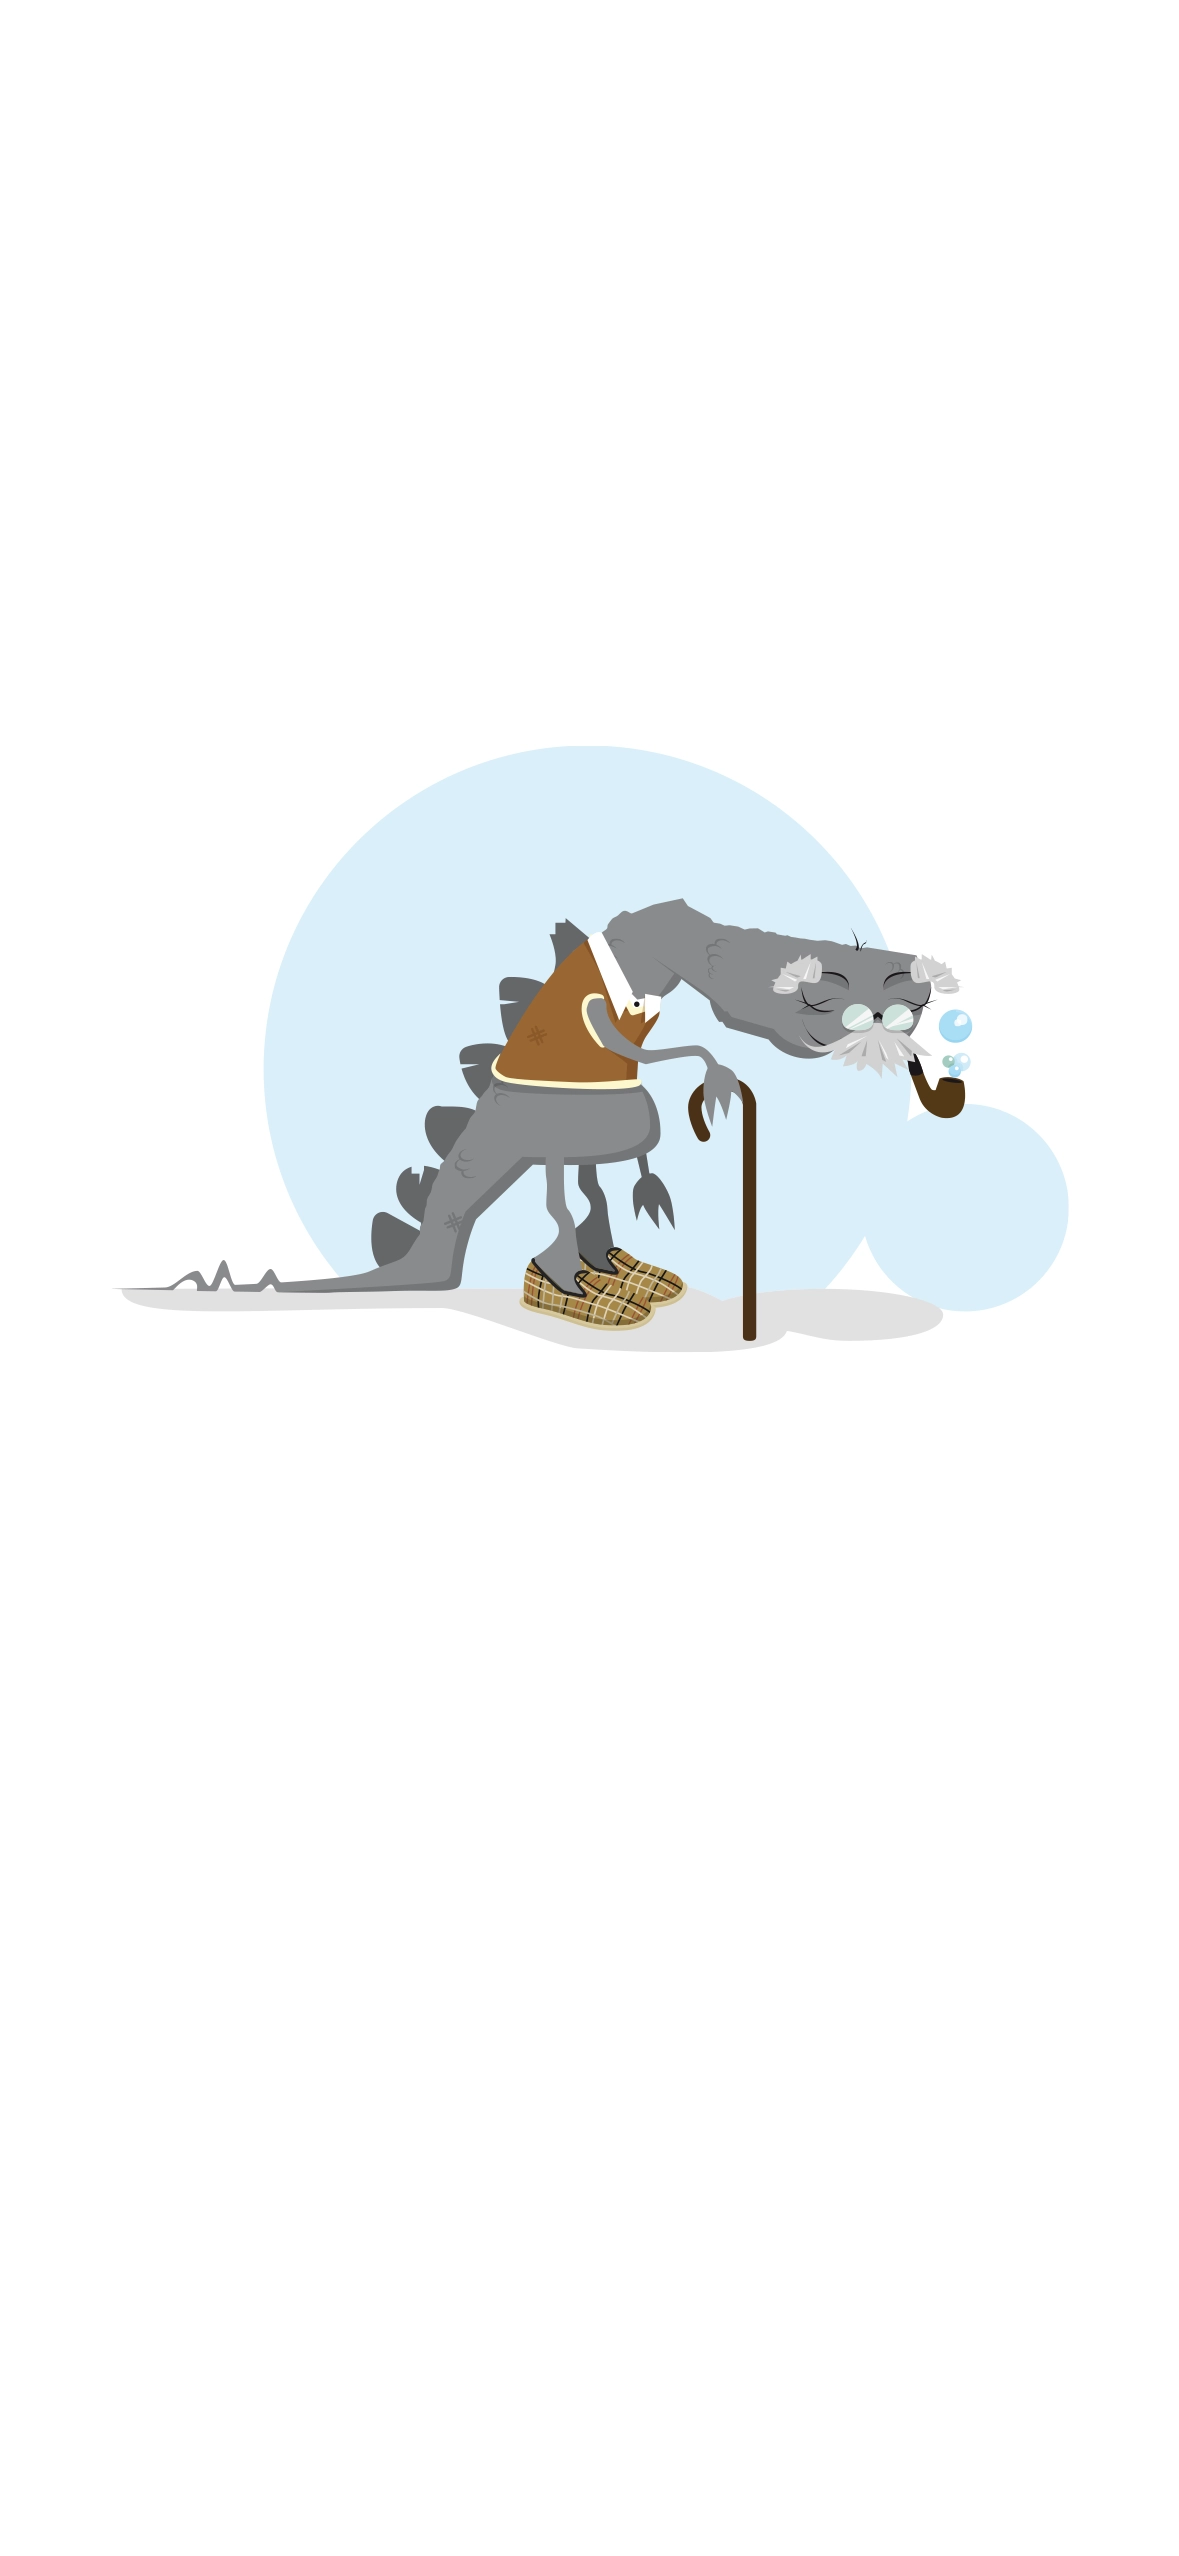 Illustration du pépétausore, dinausore imaginaire mixant un T-Rex et un papy